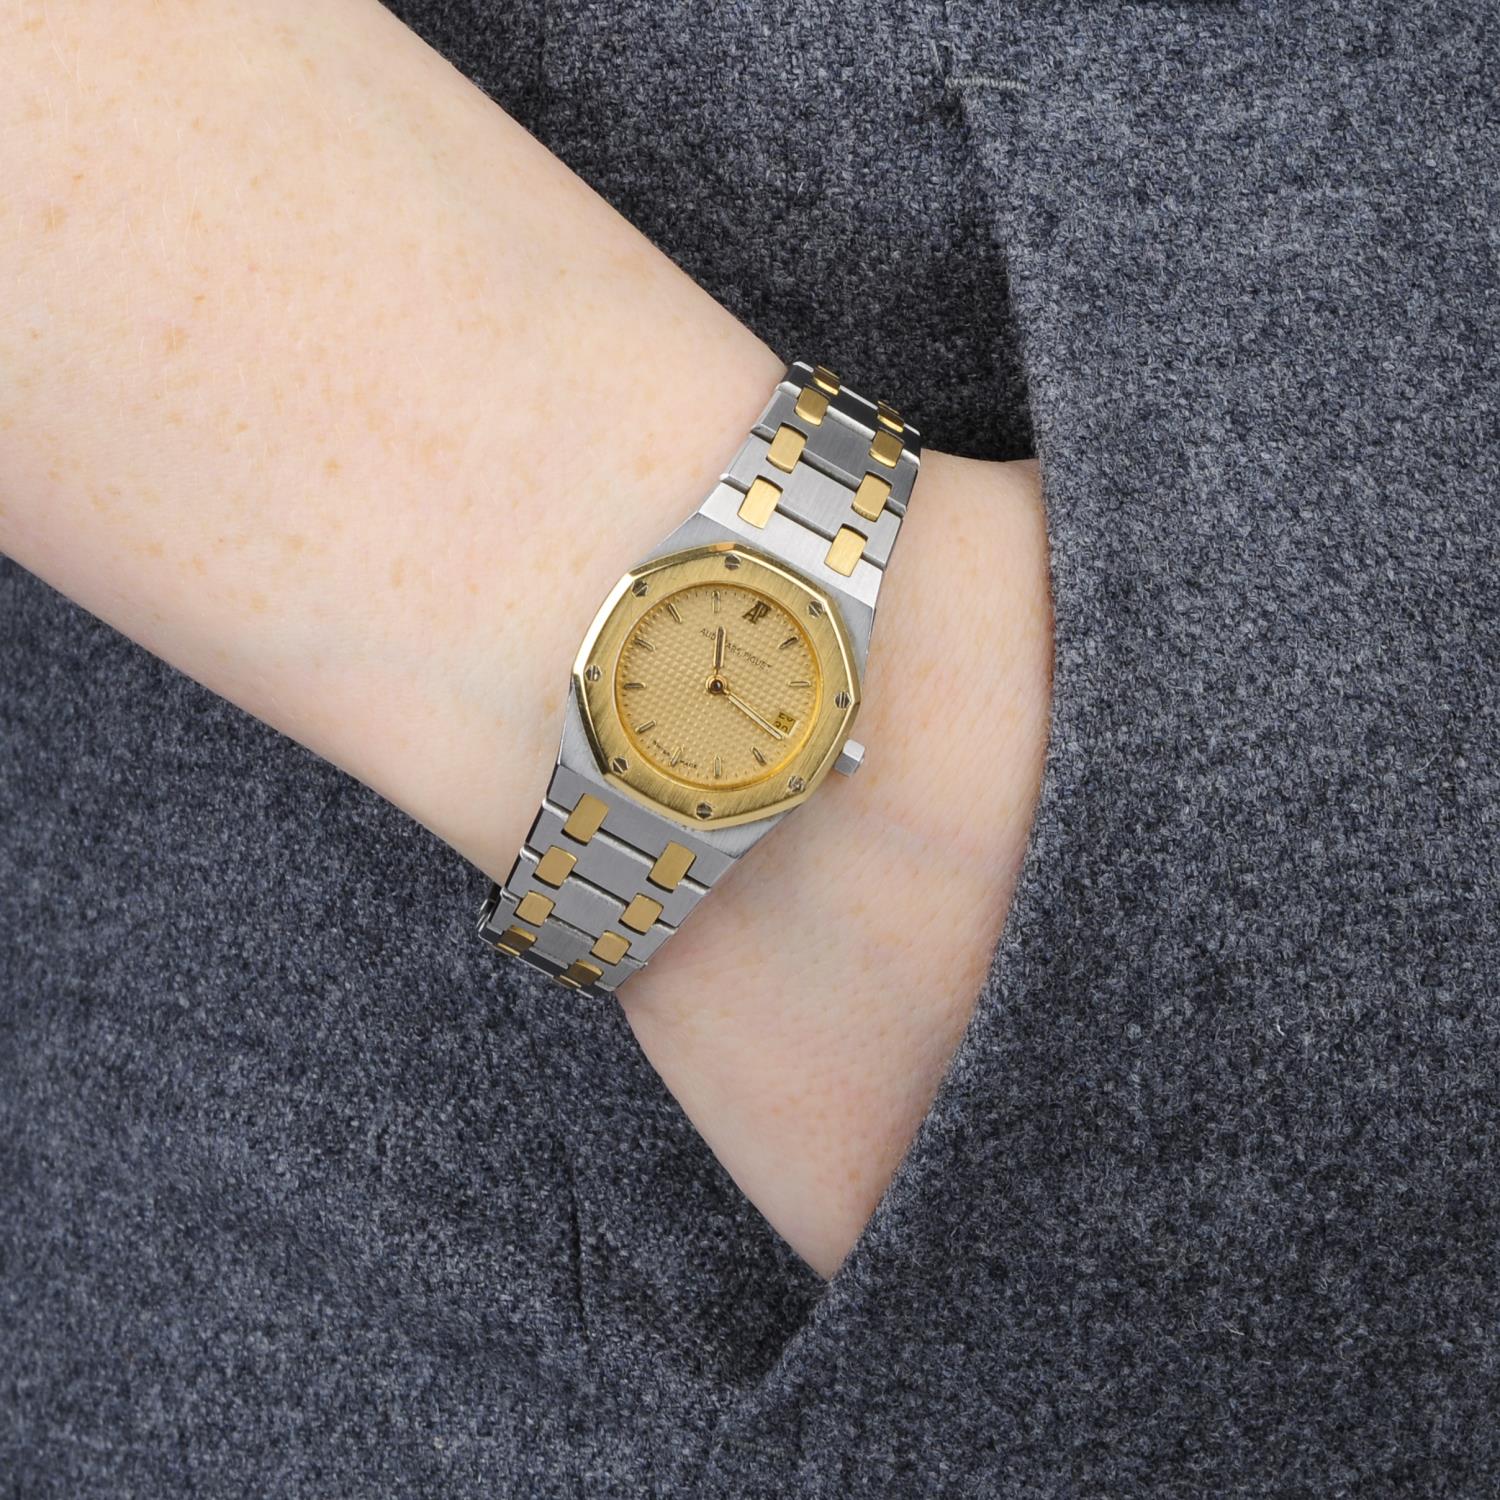 AUDEMARS PIGUET - a lady's Royal Oak bracelet watch. - Image 3 of 3